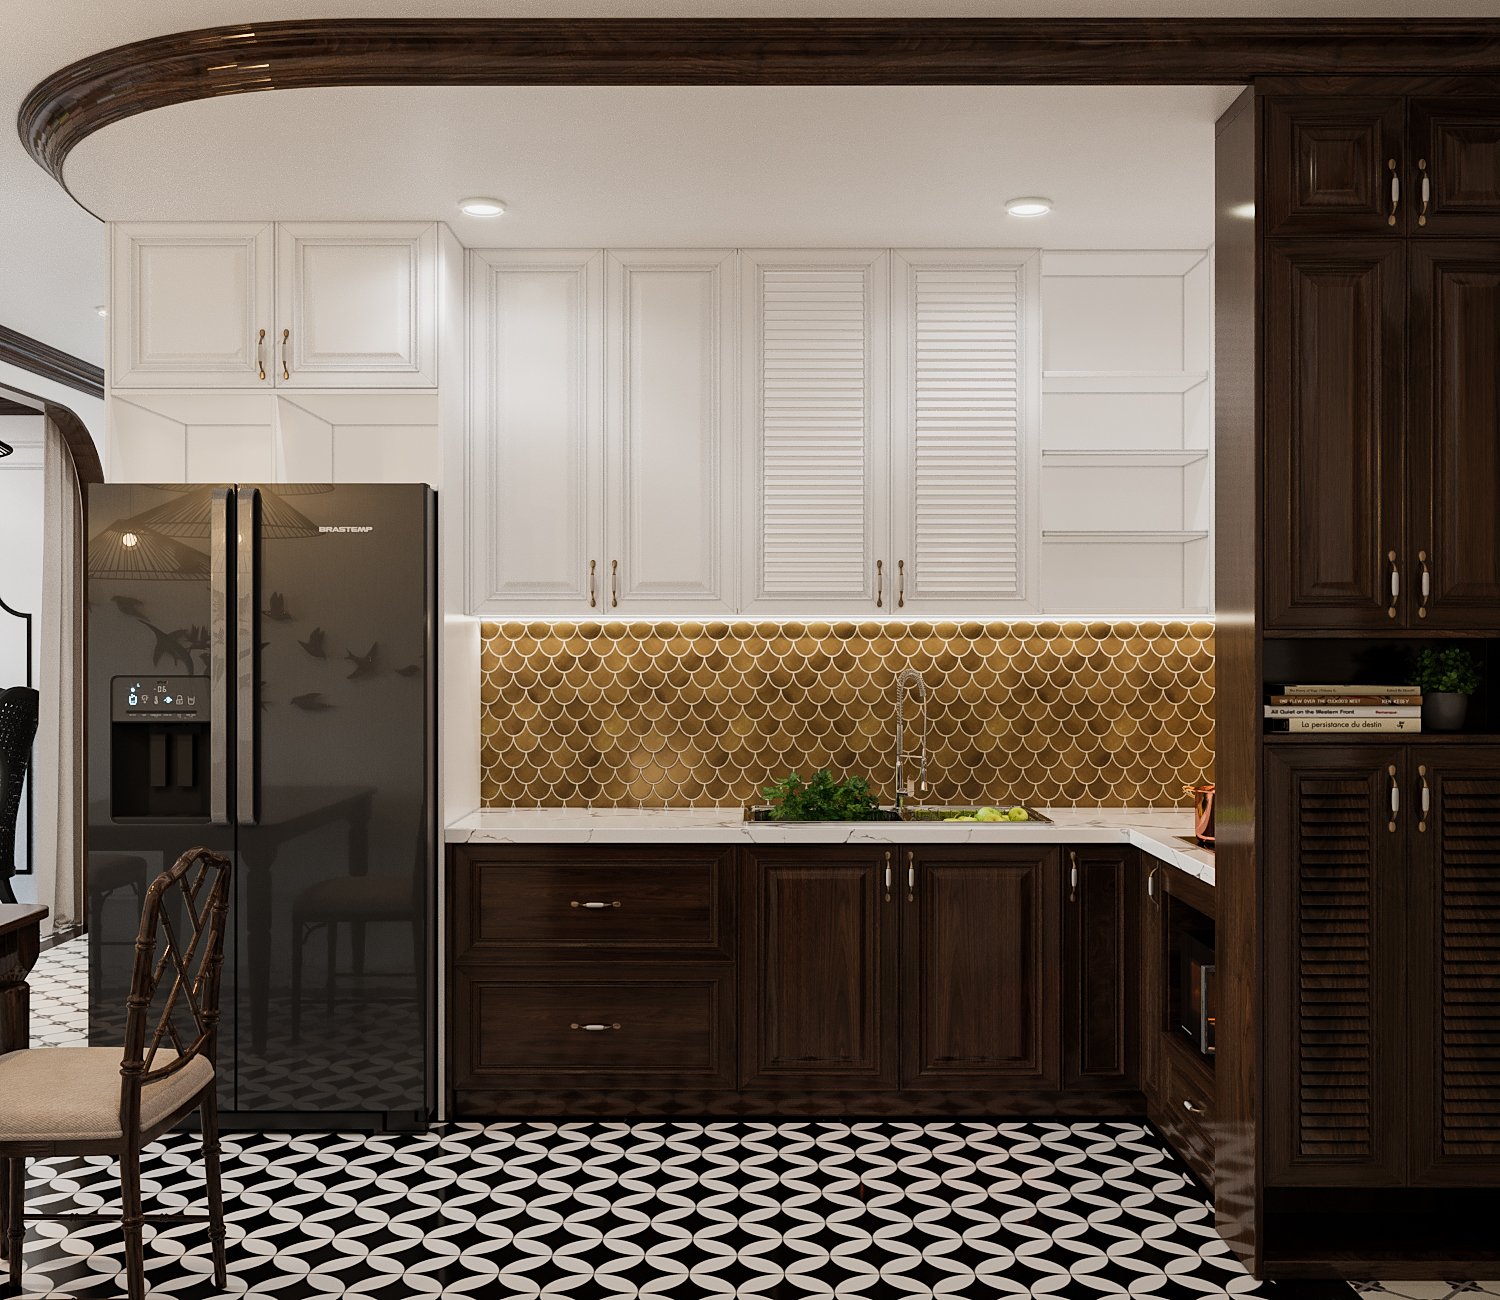 Không gian phòng bếp được thiết kế liên thông với phòng khách nhằm tạo cảm giác rộng thoáng hơn so với thực tế. Tường chắn ốp gạch màu vàng đồng, họa tiết vảy cá ấn tượng.